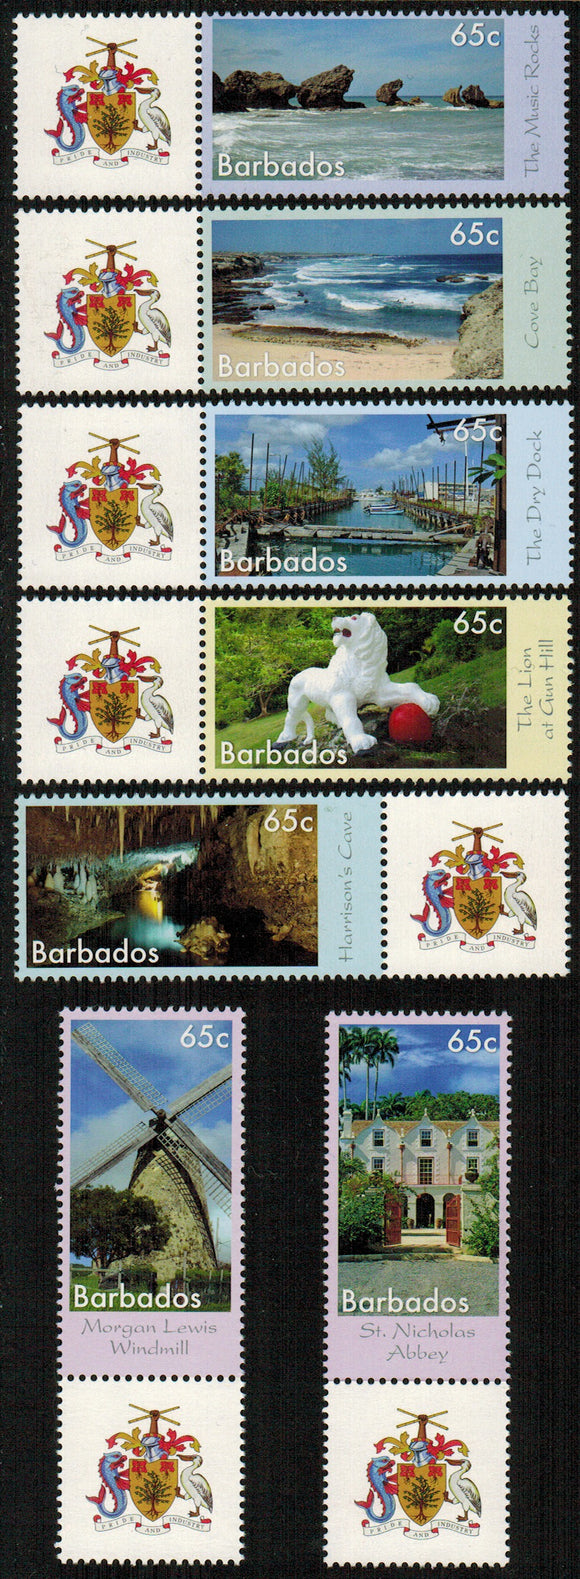 Barbados. 2014 Seven Wonders of Barbados. MNH